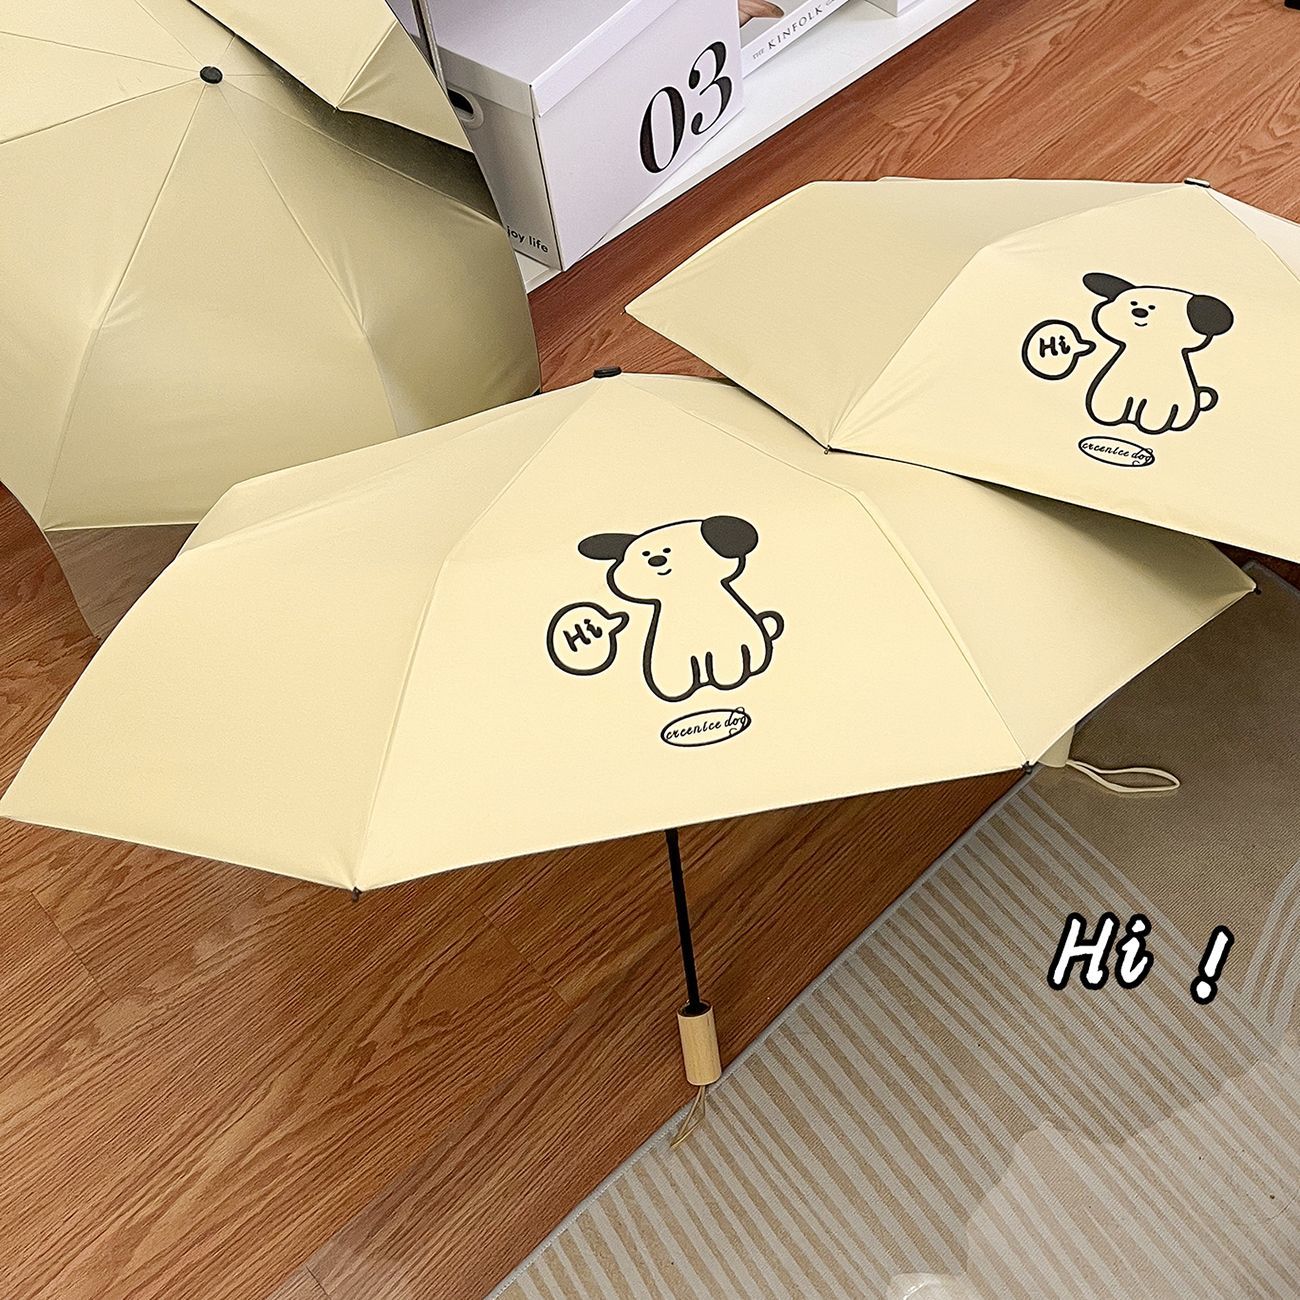 Ins Milk Huxiu Dog Umbrella Automatic Folding Tri-Fold Rain Dual-Use Folding Sun Protection Uv Protection Sun Umbrella